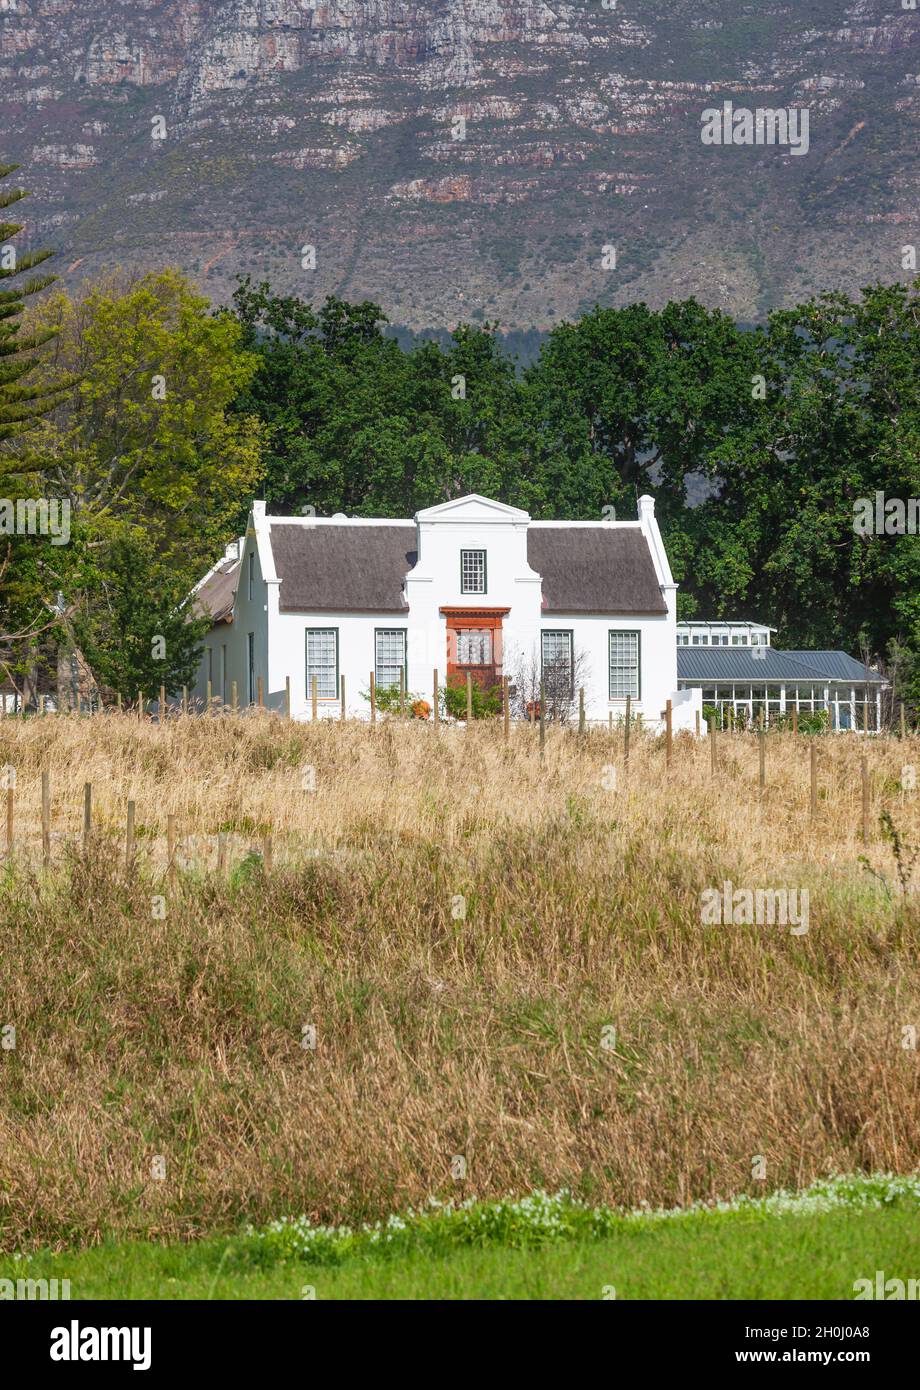 La ferme de style hollandais Nova Constantia, située dans la vallée de Constantia, au Cap, en Afrique du Sud. Banque D'Images